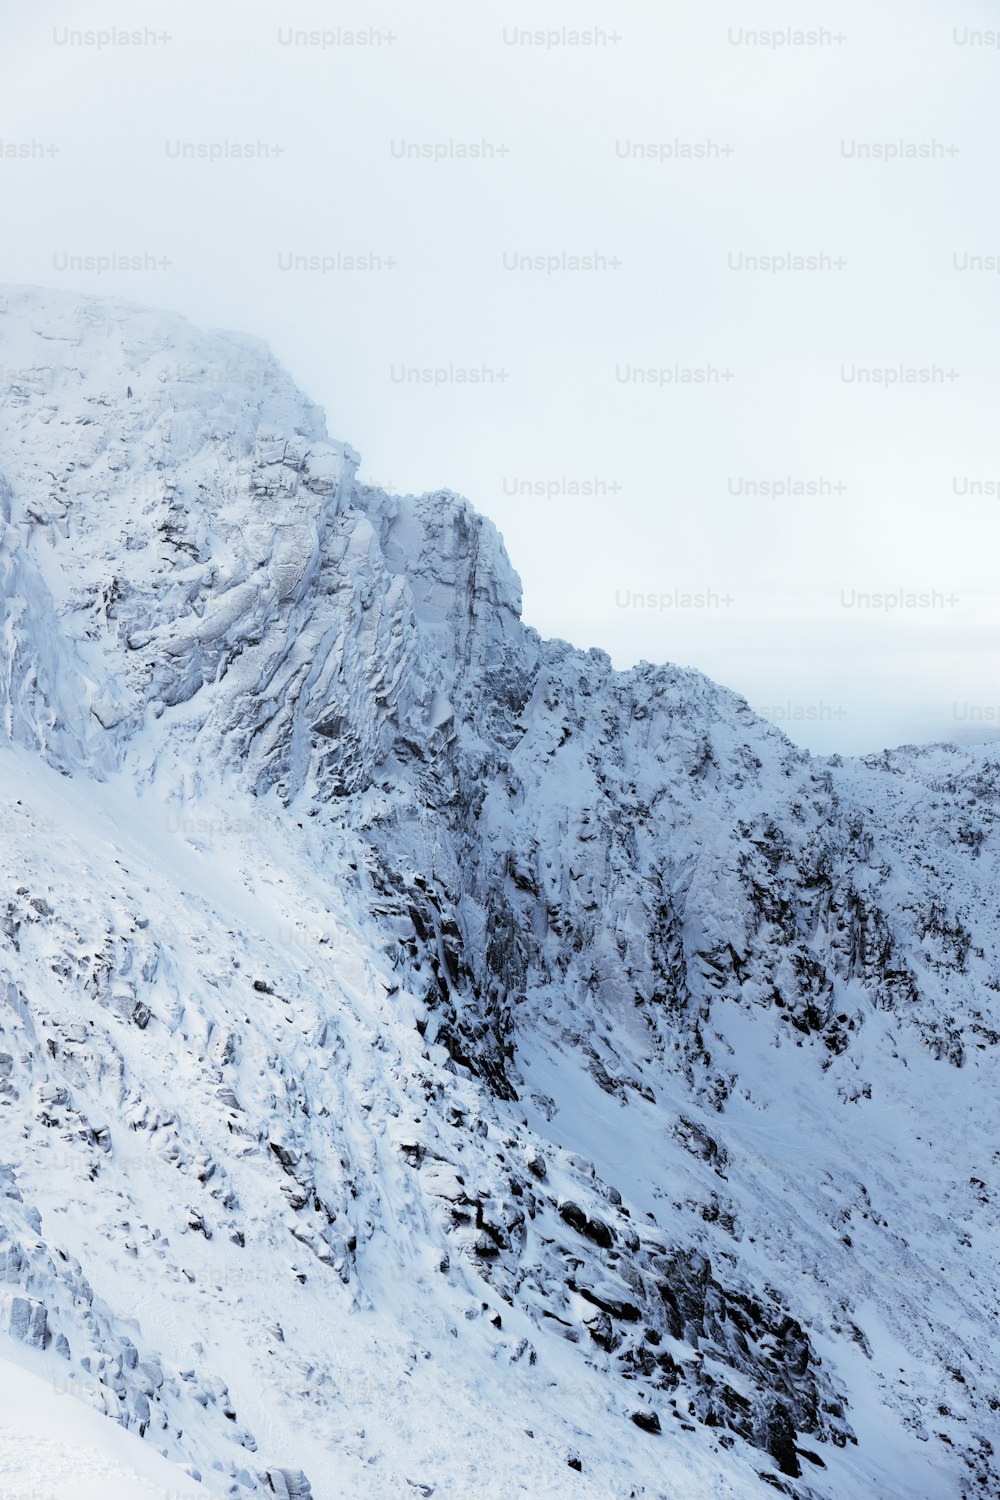 una montaña cubierta de nieve con una persona en esquís